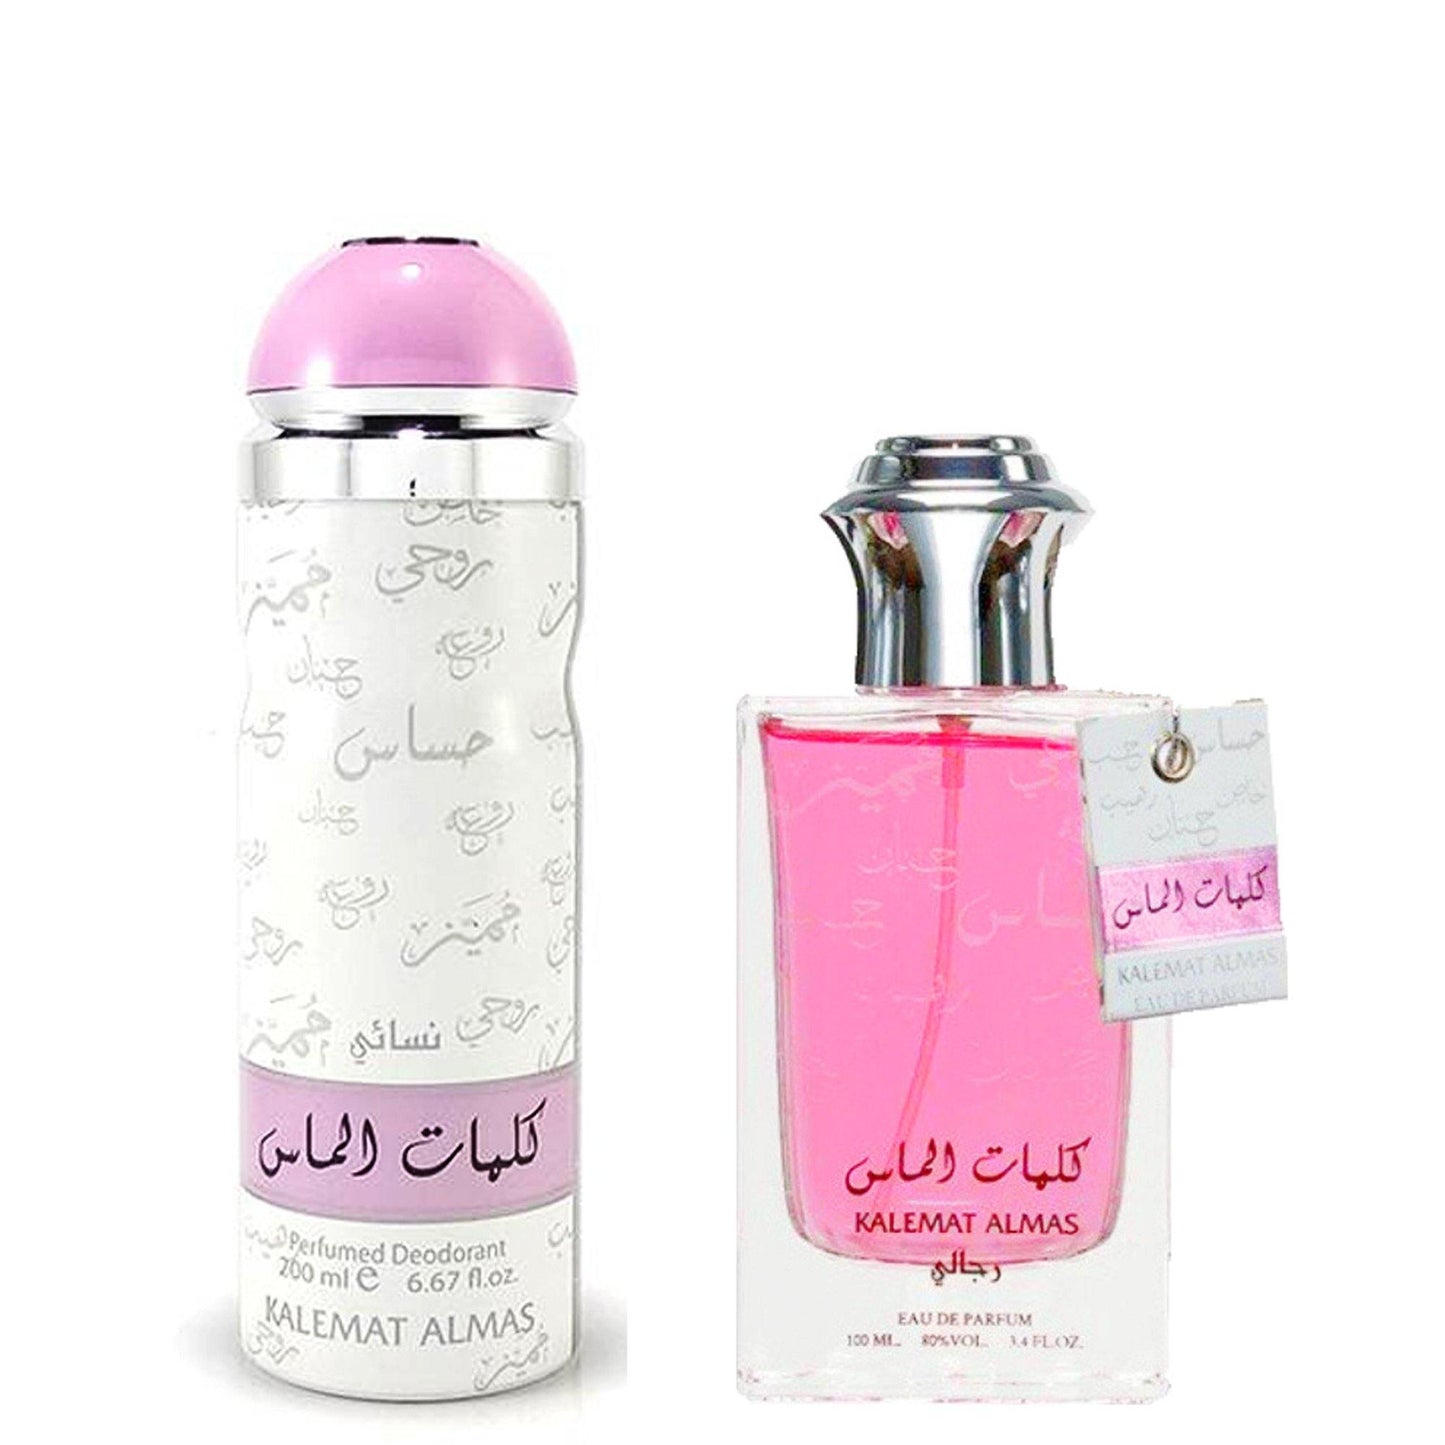 100 ml Parfume Kalemat Almas + Cadou 200 ml Deodorant cu Arome Fructate-Floral pentru Femei - Bijuterii TV